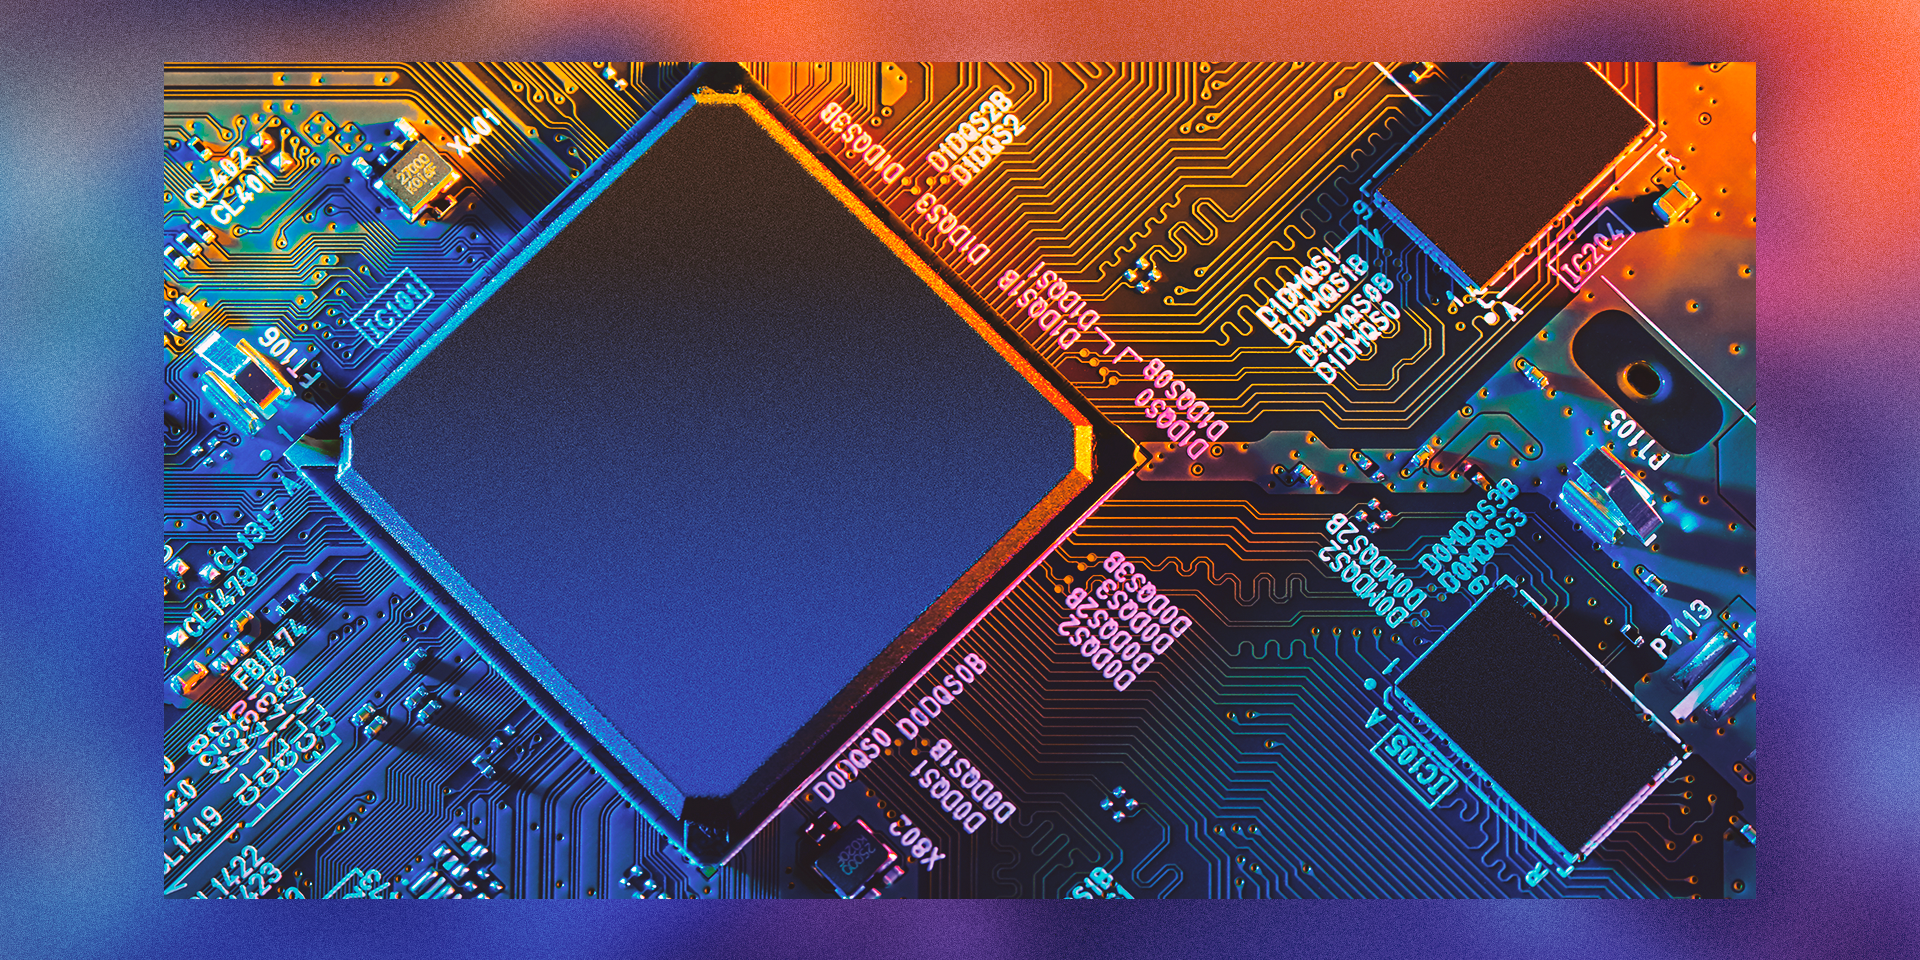 Colorful CPU card